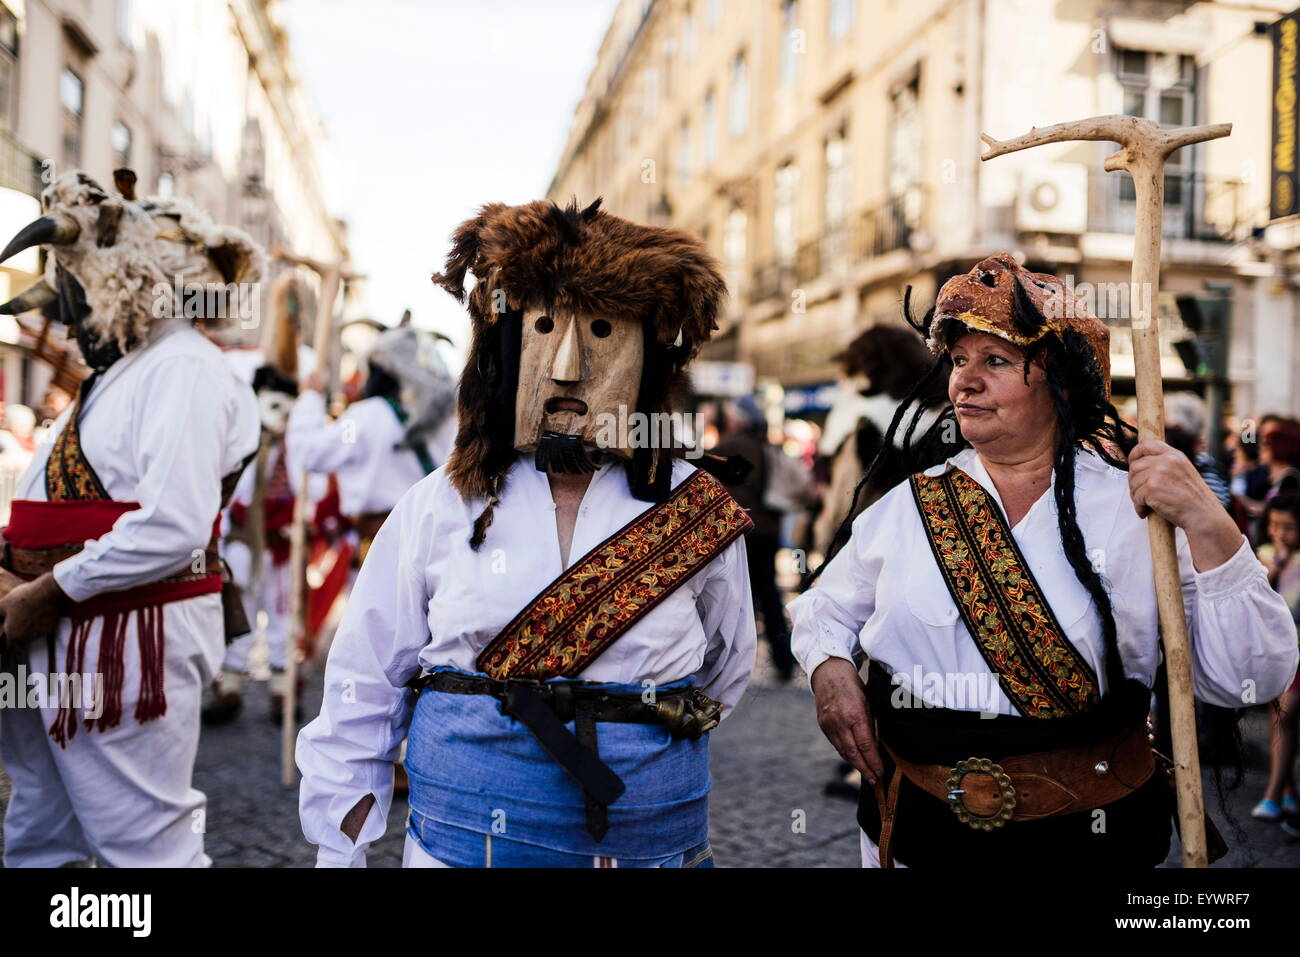 Festival internazionale maschera iberica, Lisbona, Portogallo, Europa Foto Stock